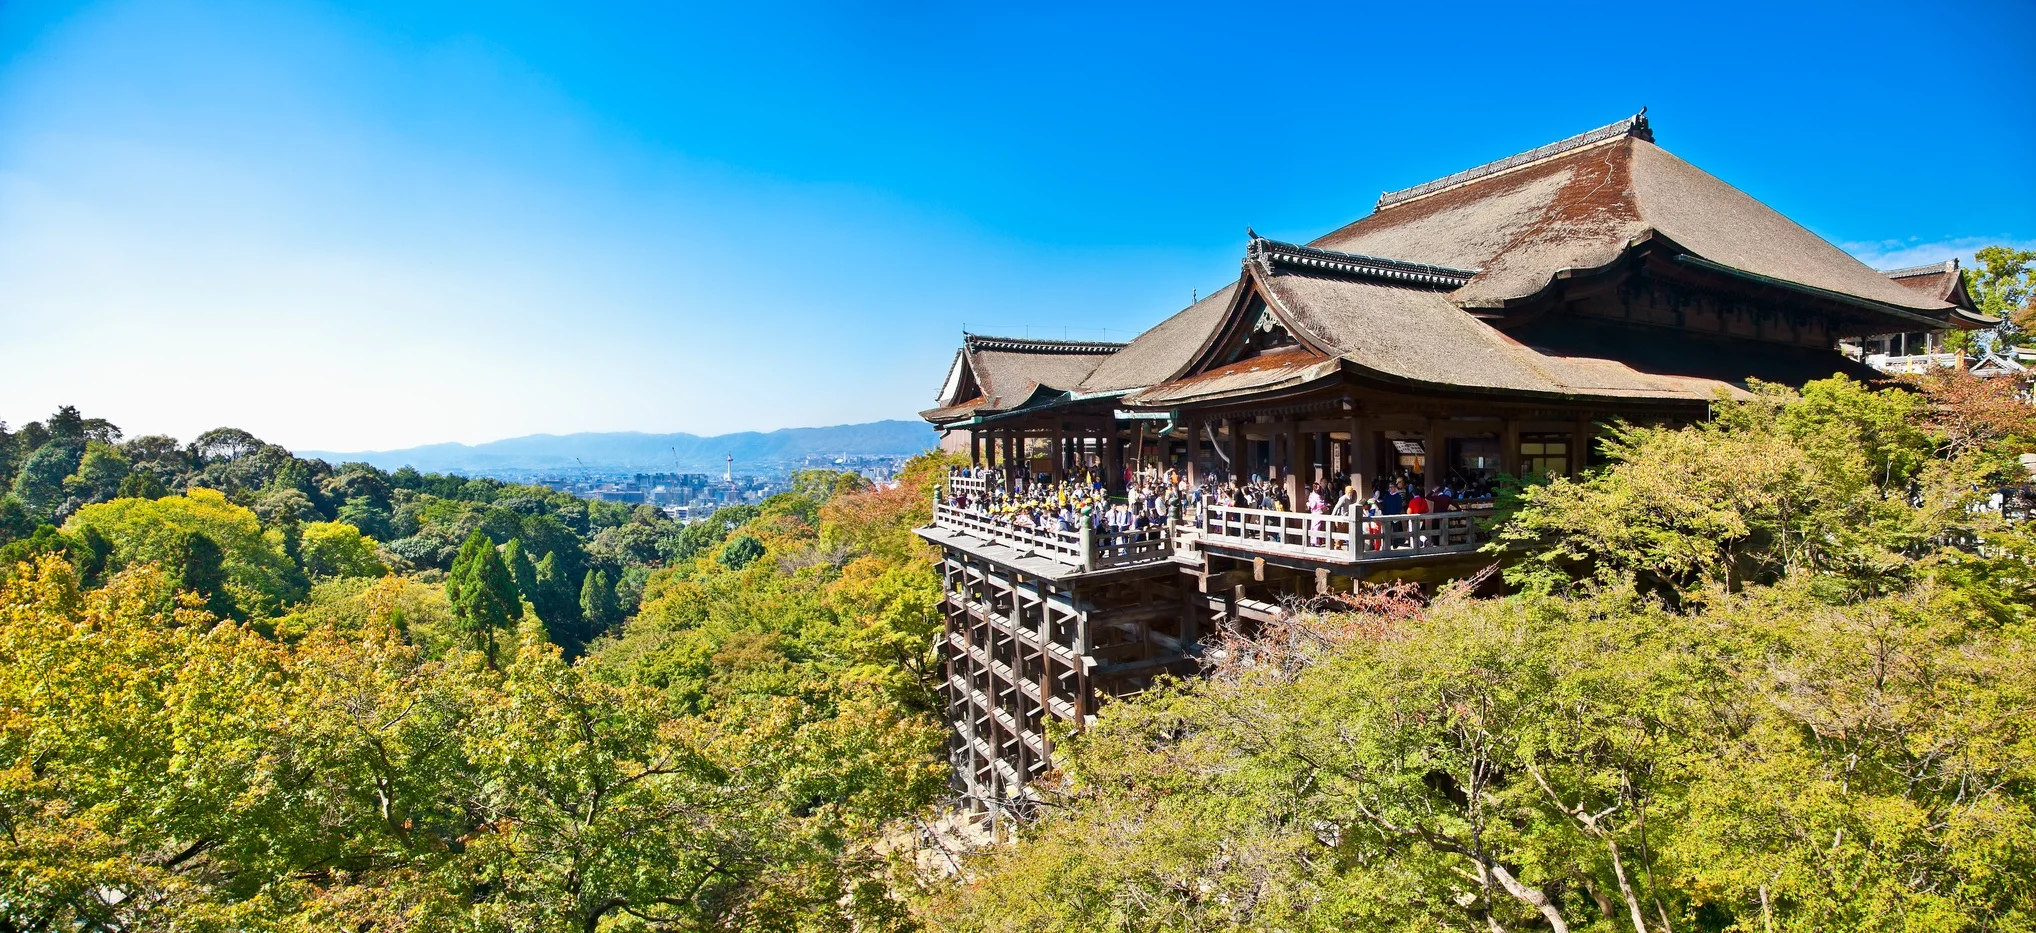 Explore Kyoto: Gion, Kiyomizu, Nishiki Market – Private Tour